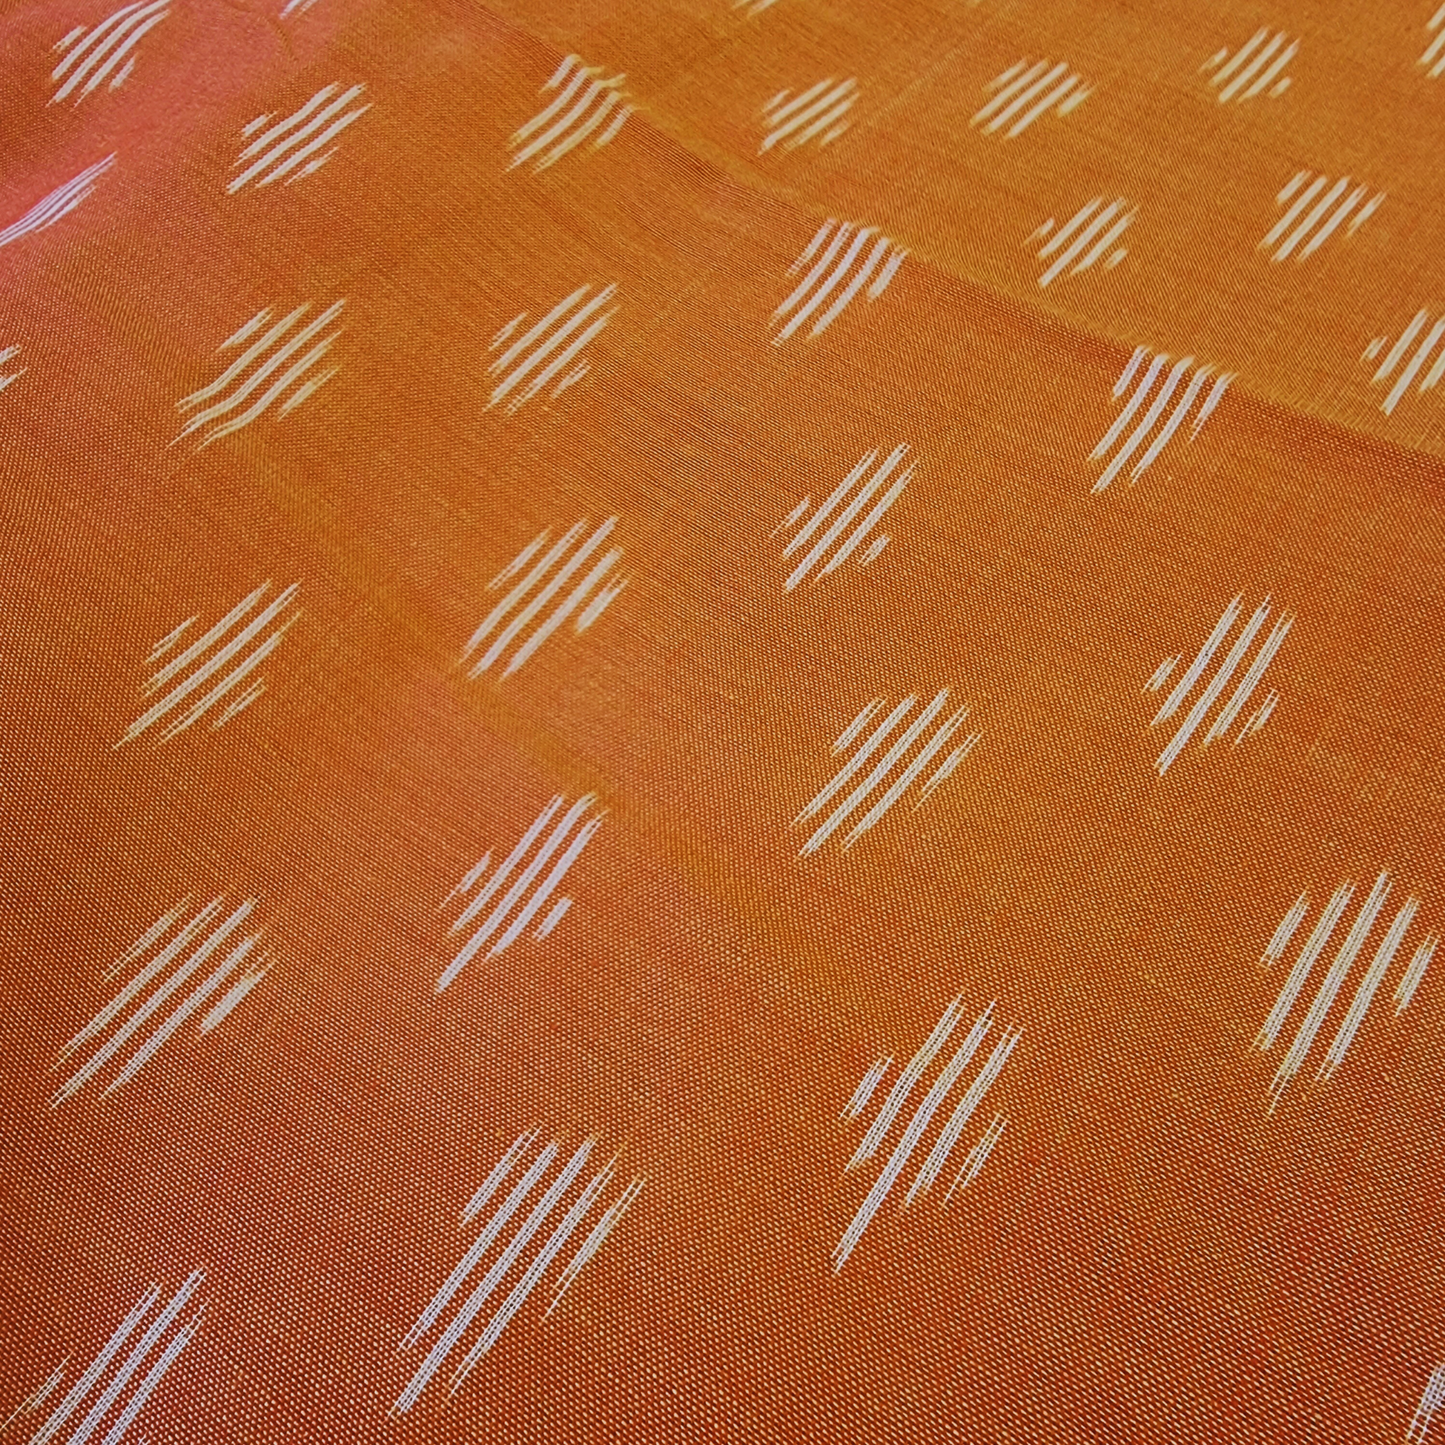 Indian Ikat Cotton Fabric